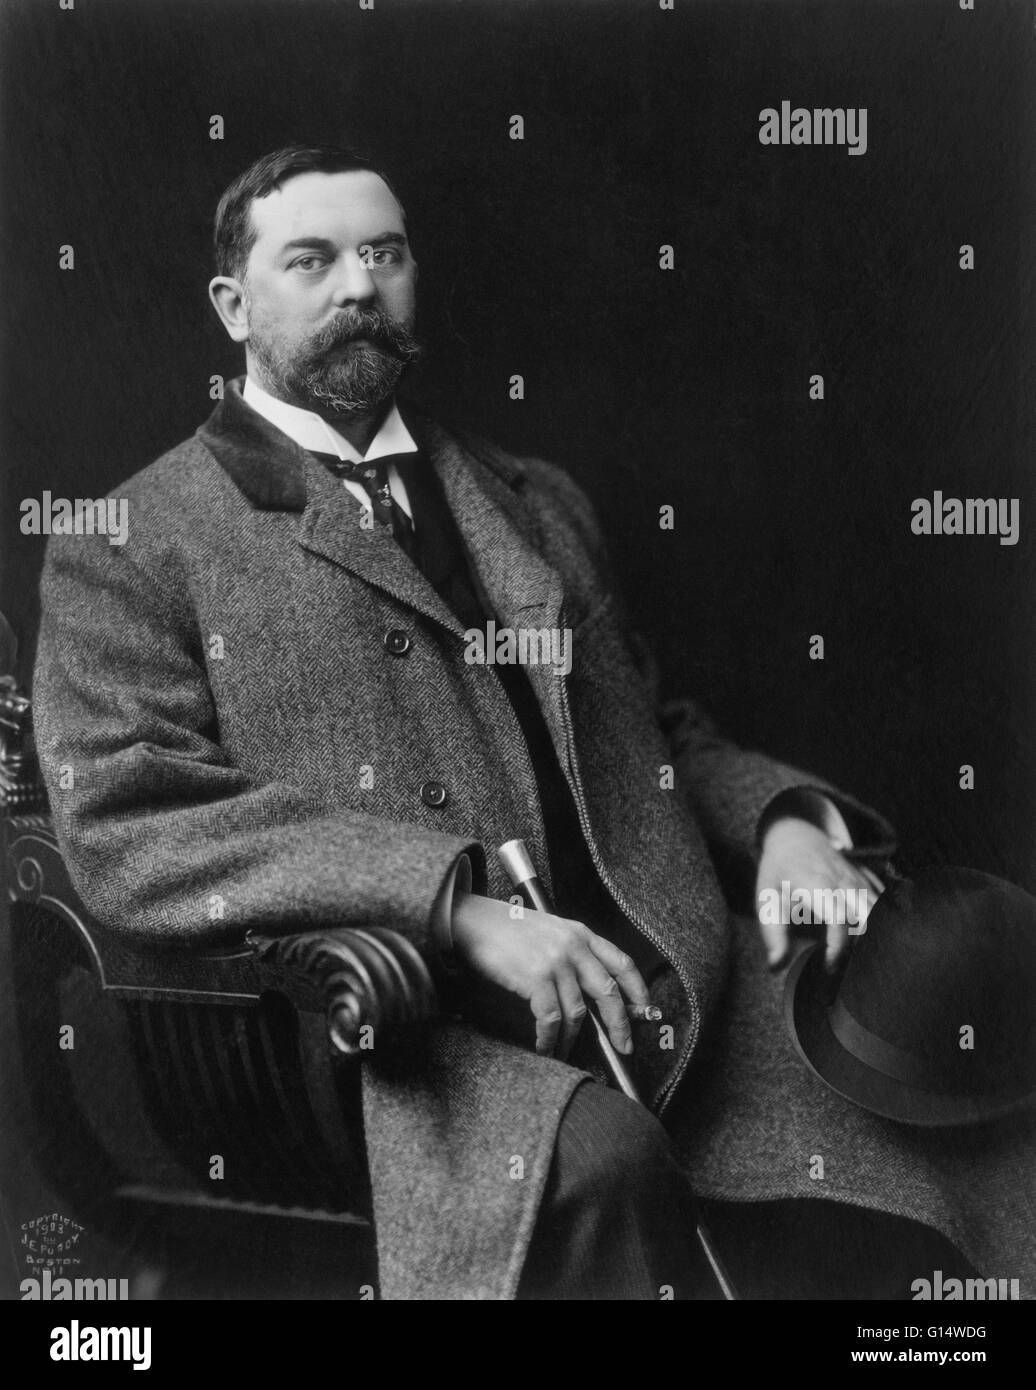 Portrait de John Singer Sargent (Janvier 12, 1856 - Avril 14, 1925), un artiste américain rappeler surtout pour ses portraits. Banque D'Images